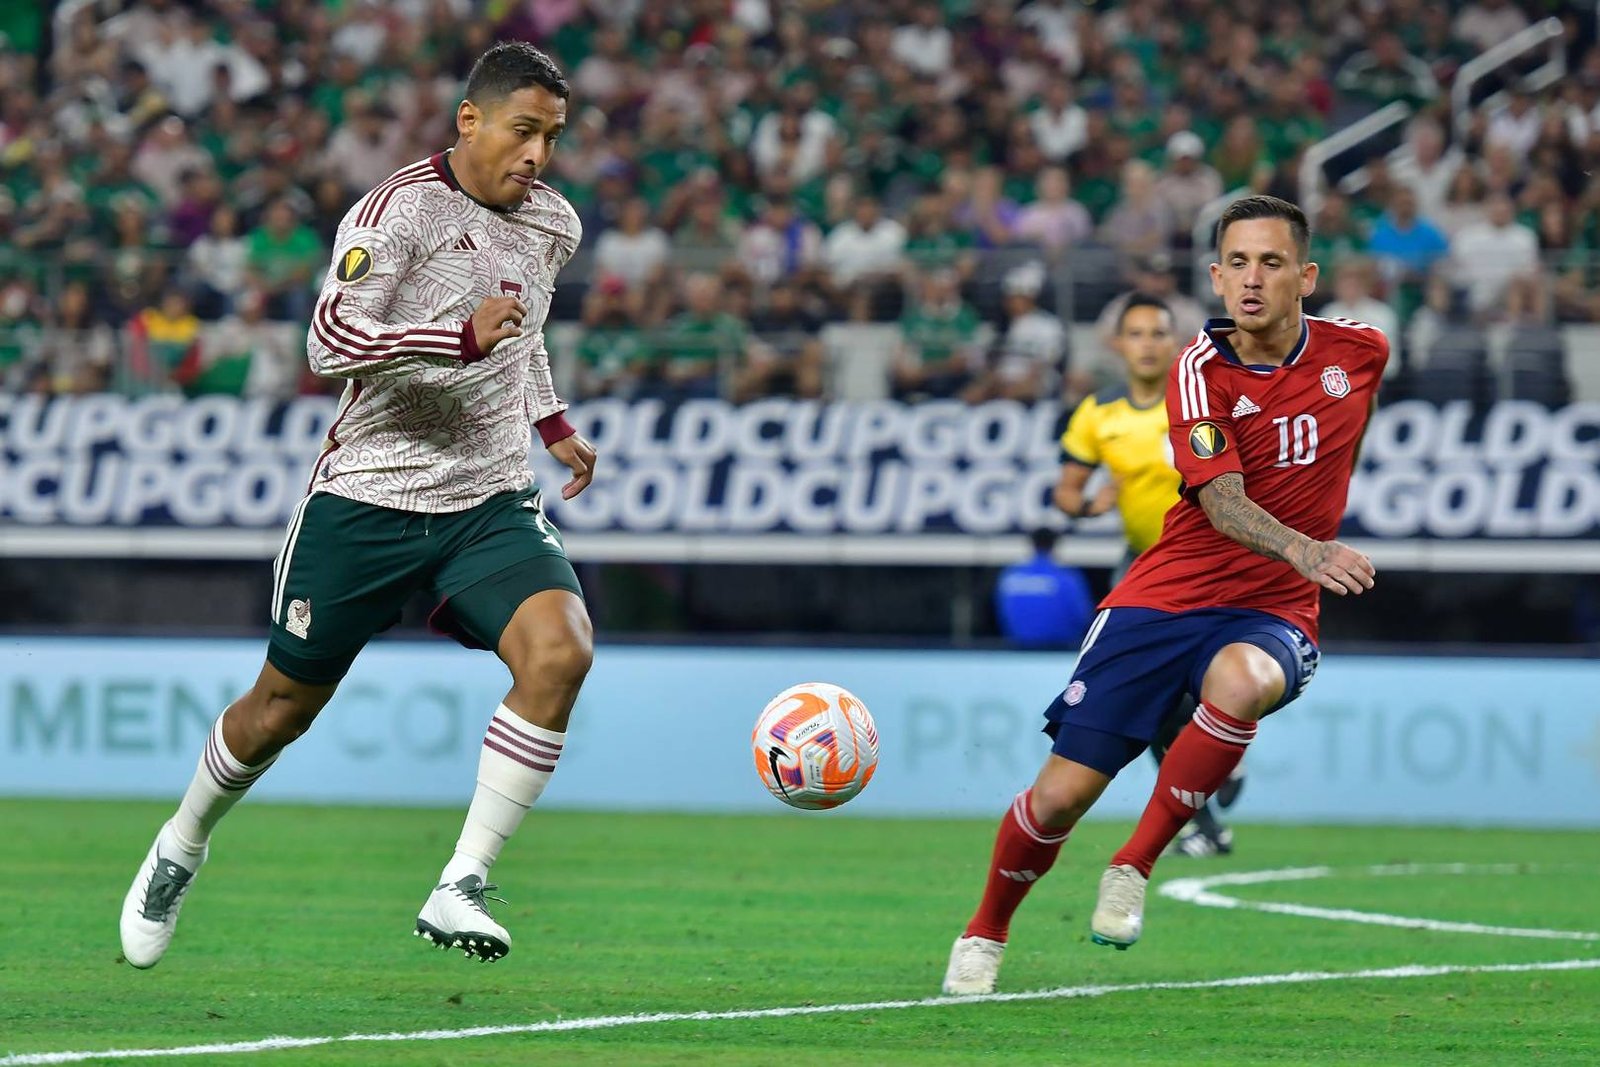 México derrota 20 a Costa Rica y avanza a la semifinal de la Copa Oro